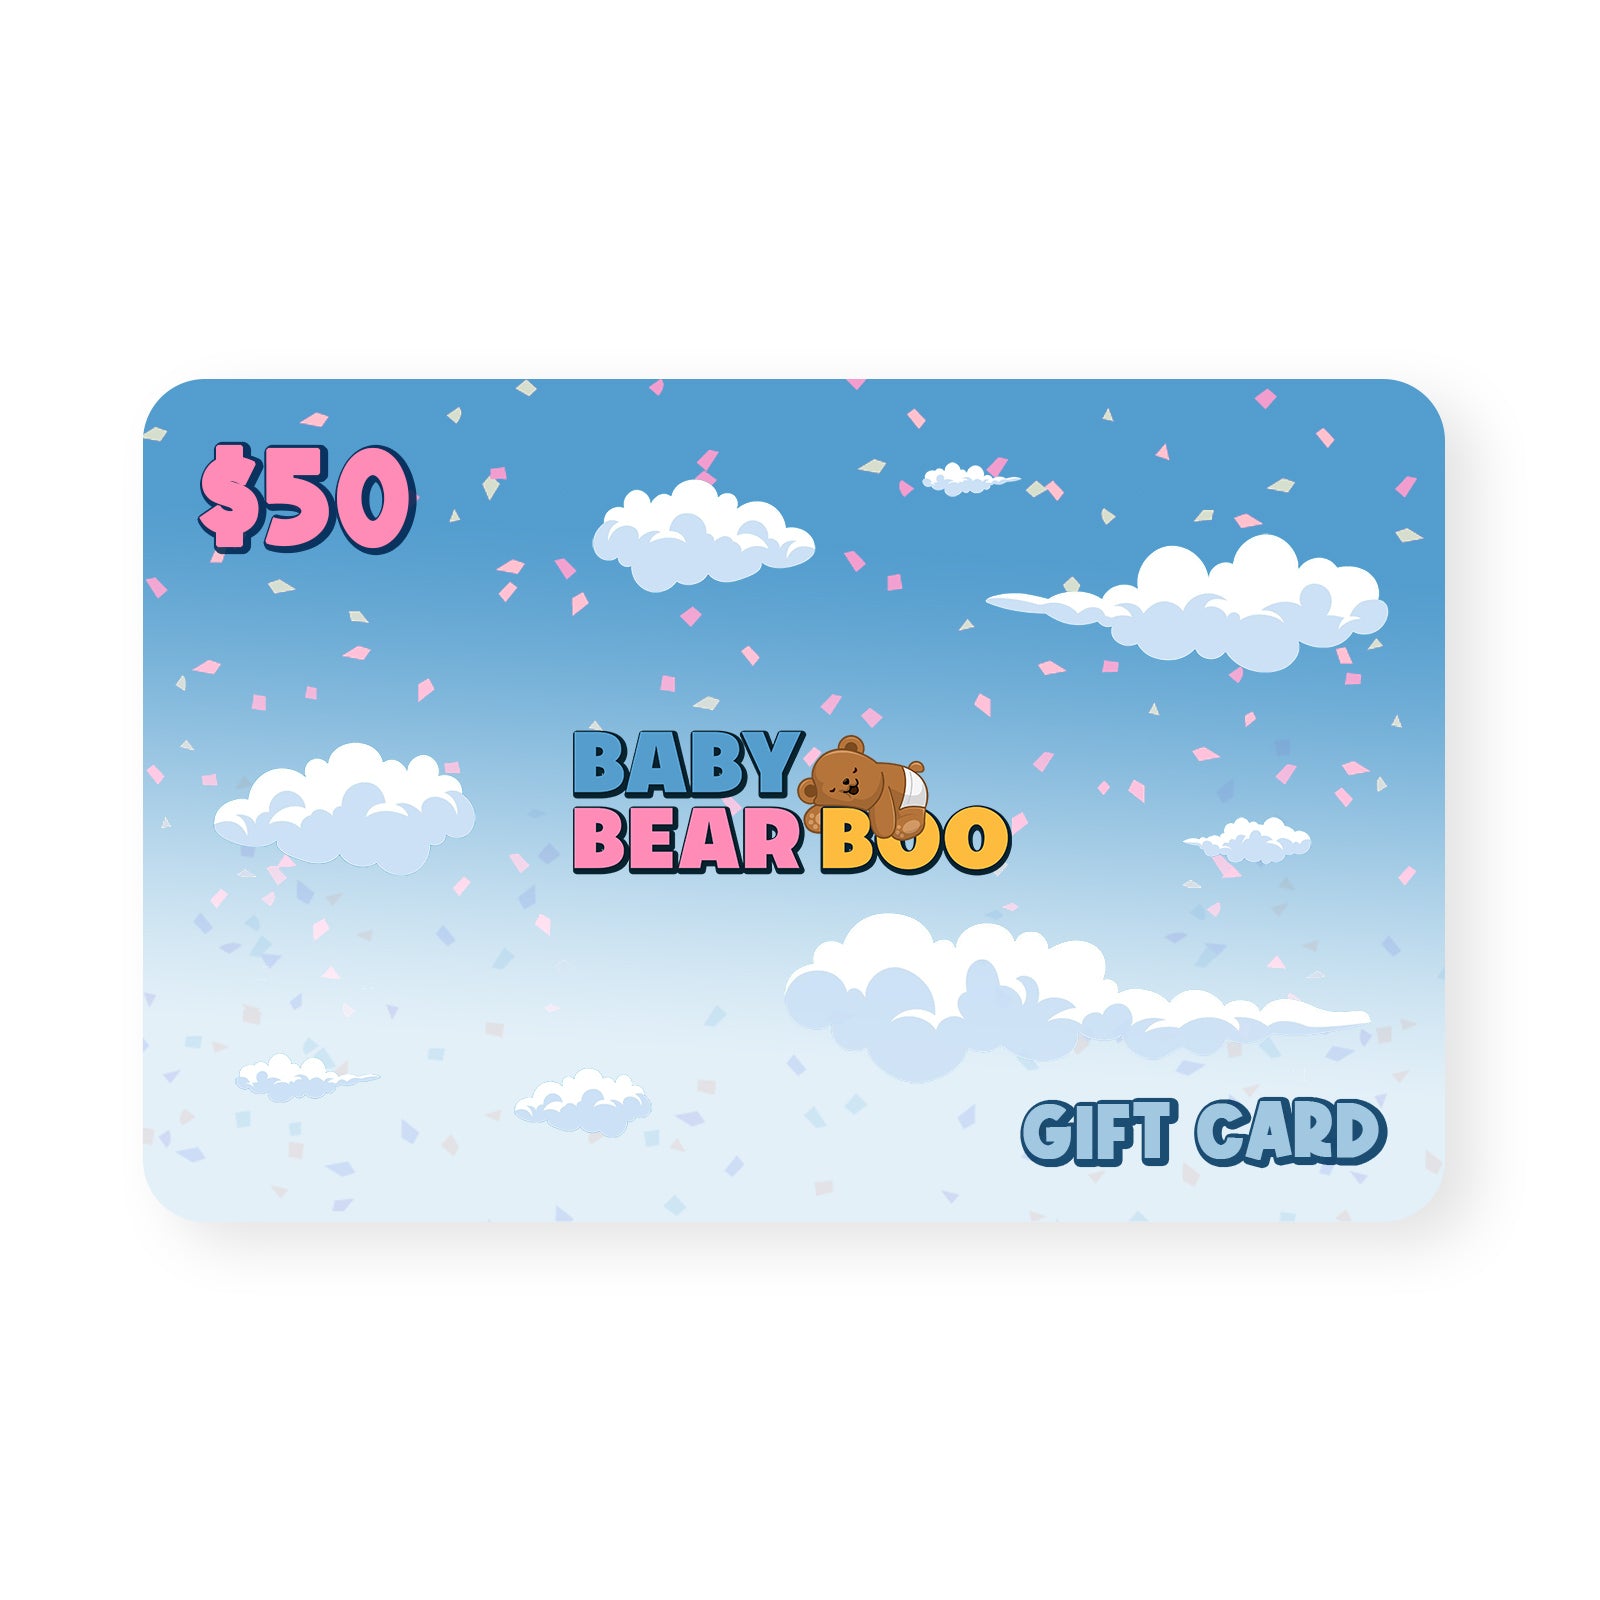 Baby Bear Boo GIFT CARD